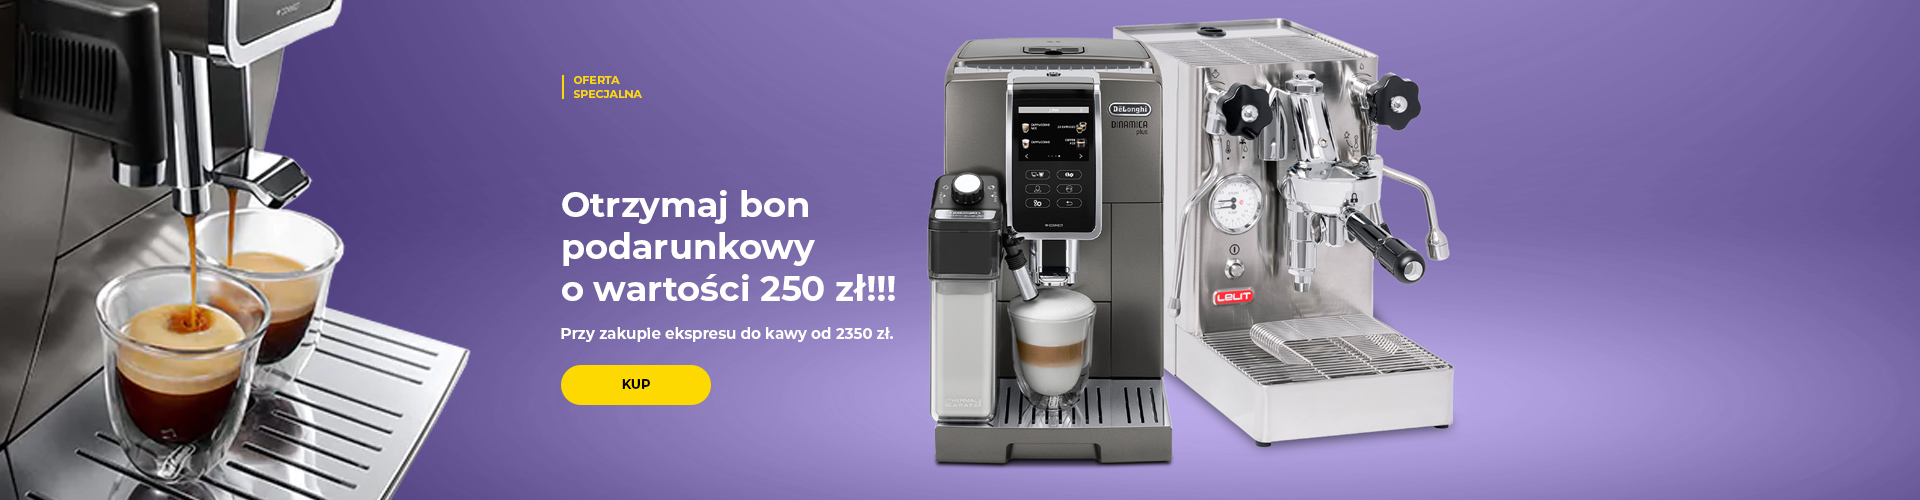 "Otrzymaj bon podarunkowy o wartości 250 zł!!! Przy zakupie ekspresu do kawy od 2350 zł."